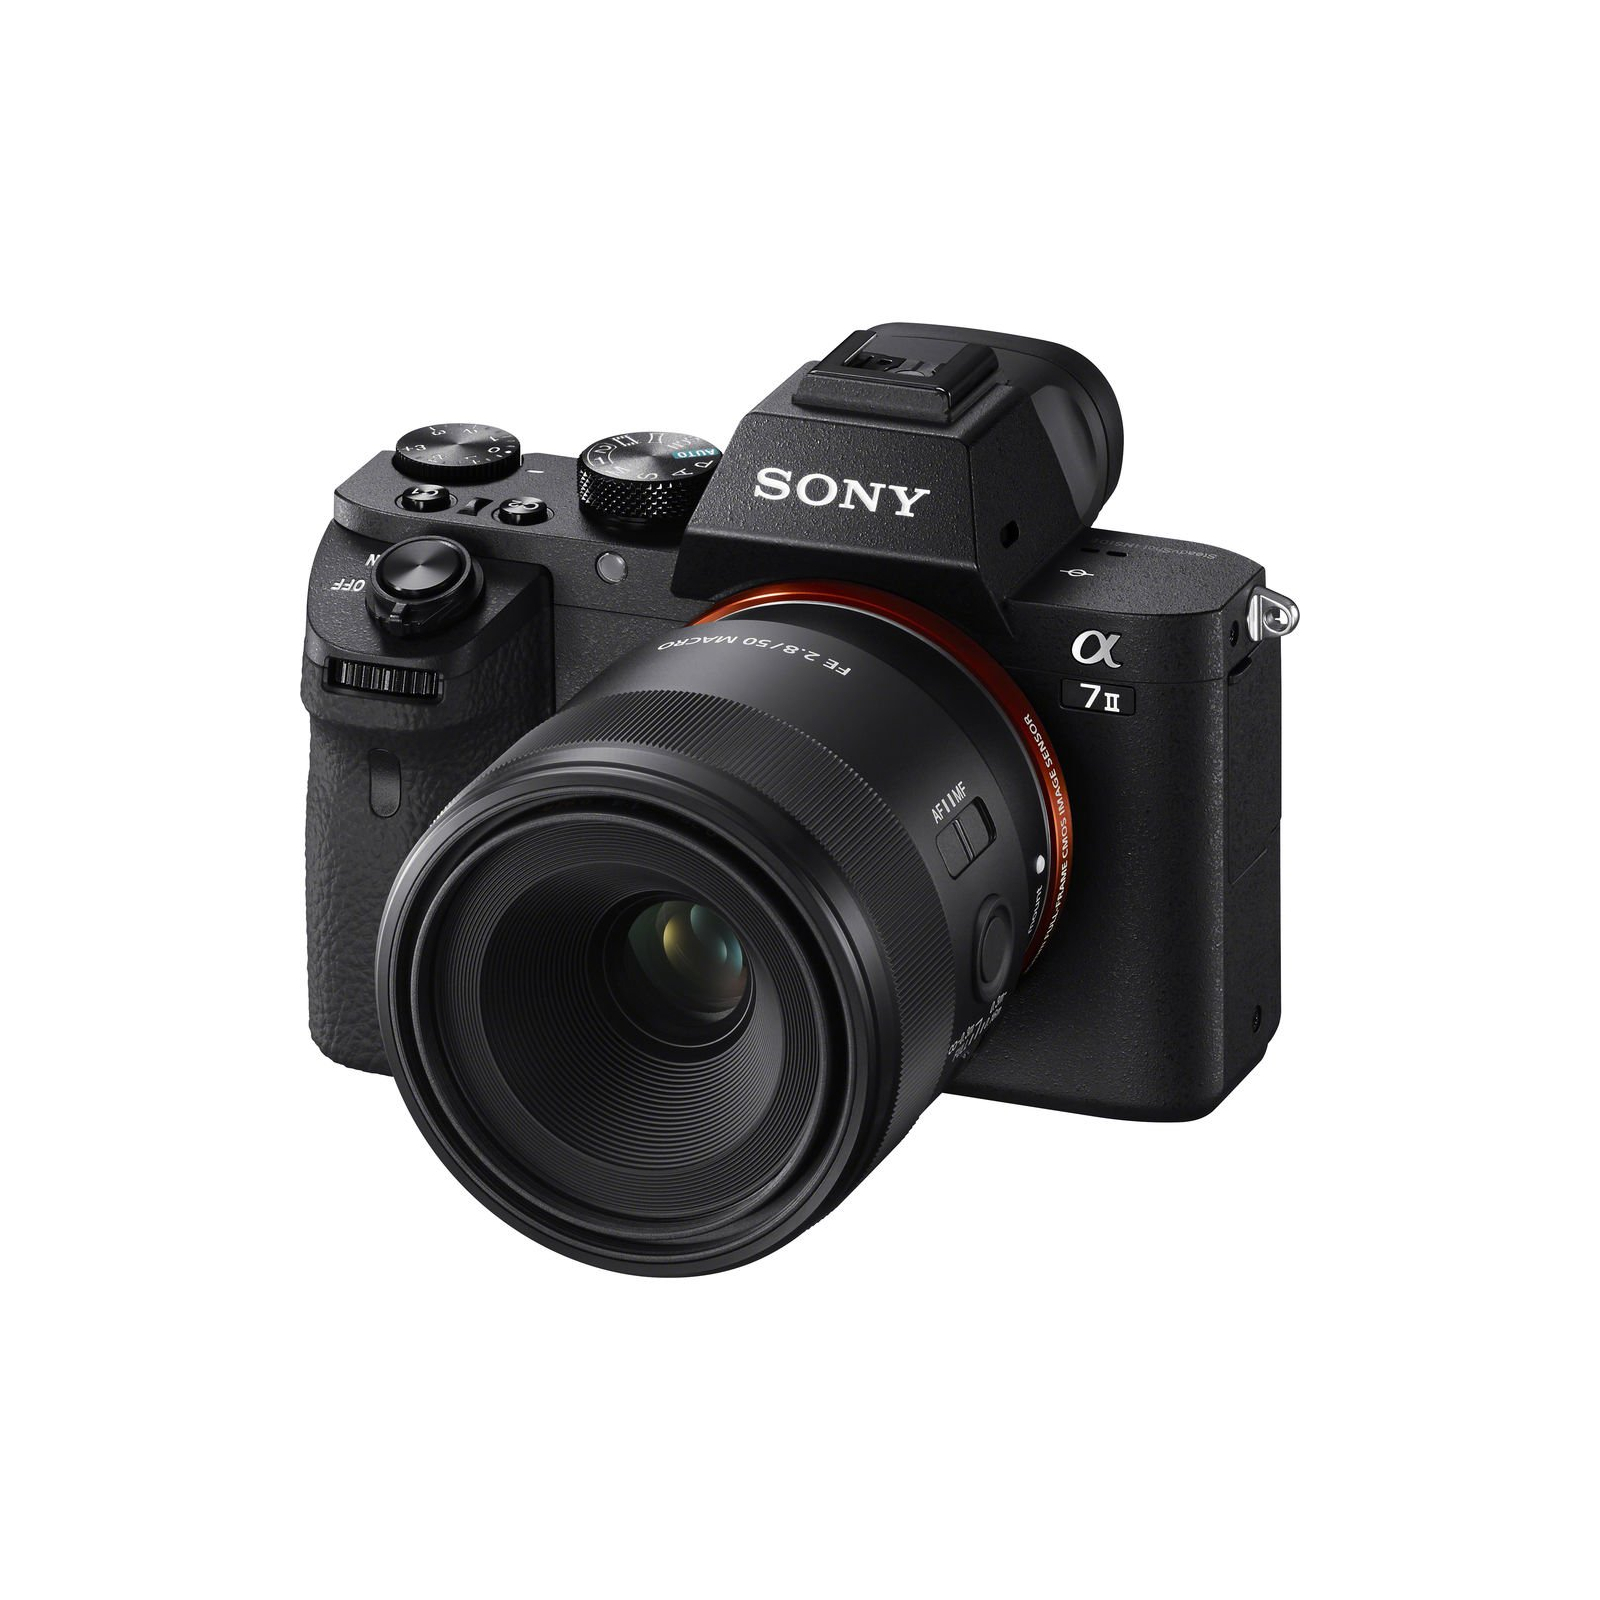 Об'єктив Sony 50mm, f/2.8 Macro для камер NEX FF (SEL50M28.SYX) зображення 8